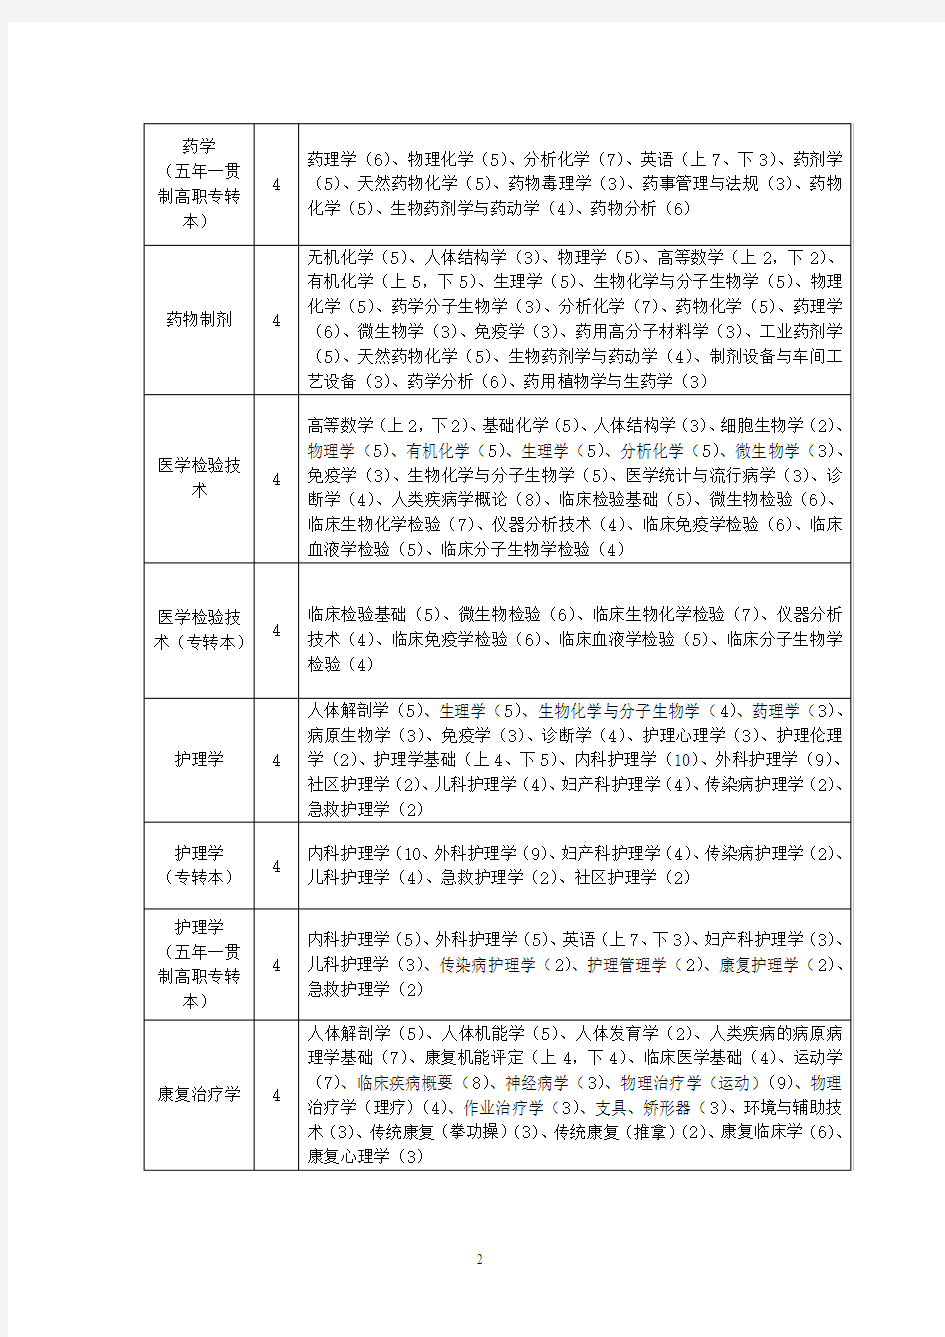 南京医科大学康达学院 2015年级各专业主要课程一览表